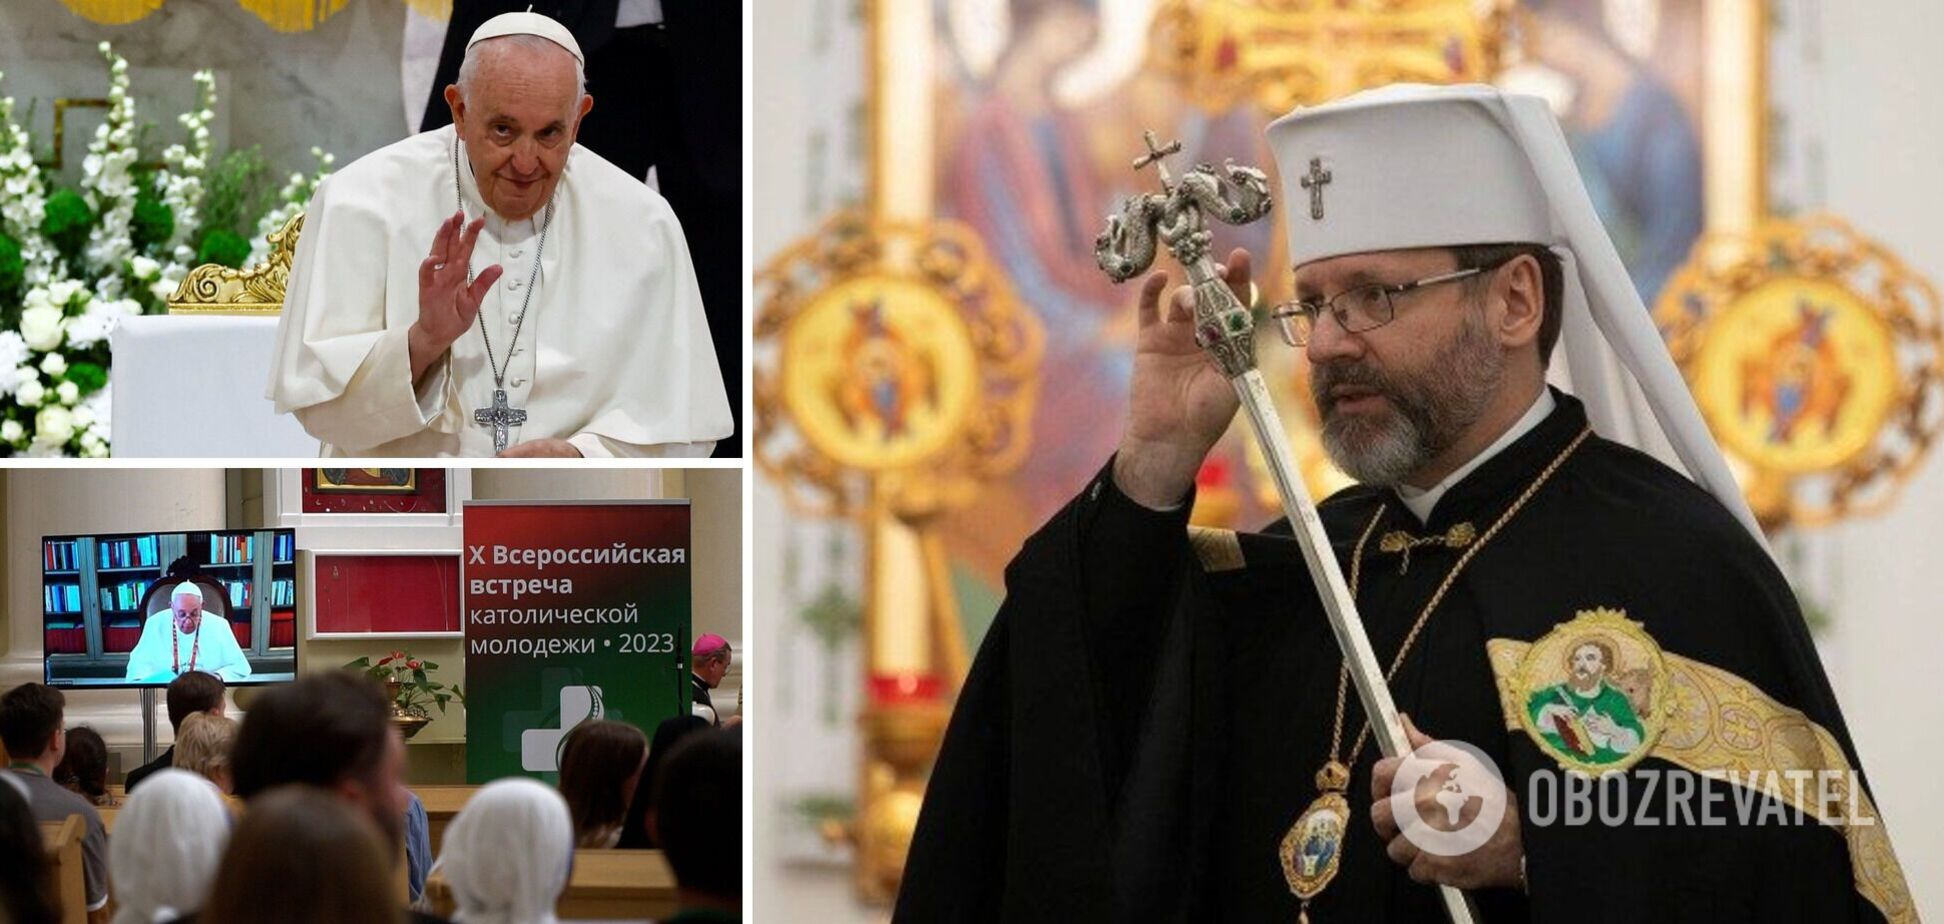 'Ожидаем объяснений': глава УГКЦ отреагировал на заявление Папы Римского о 'великой России' и сделал оговорку